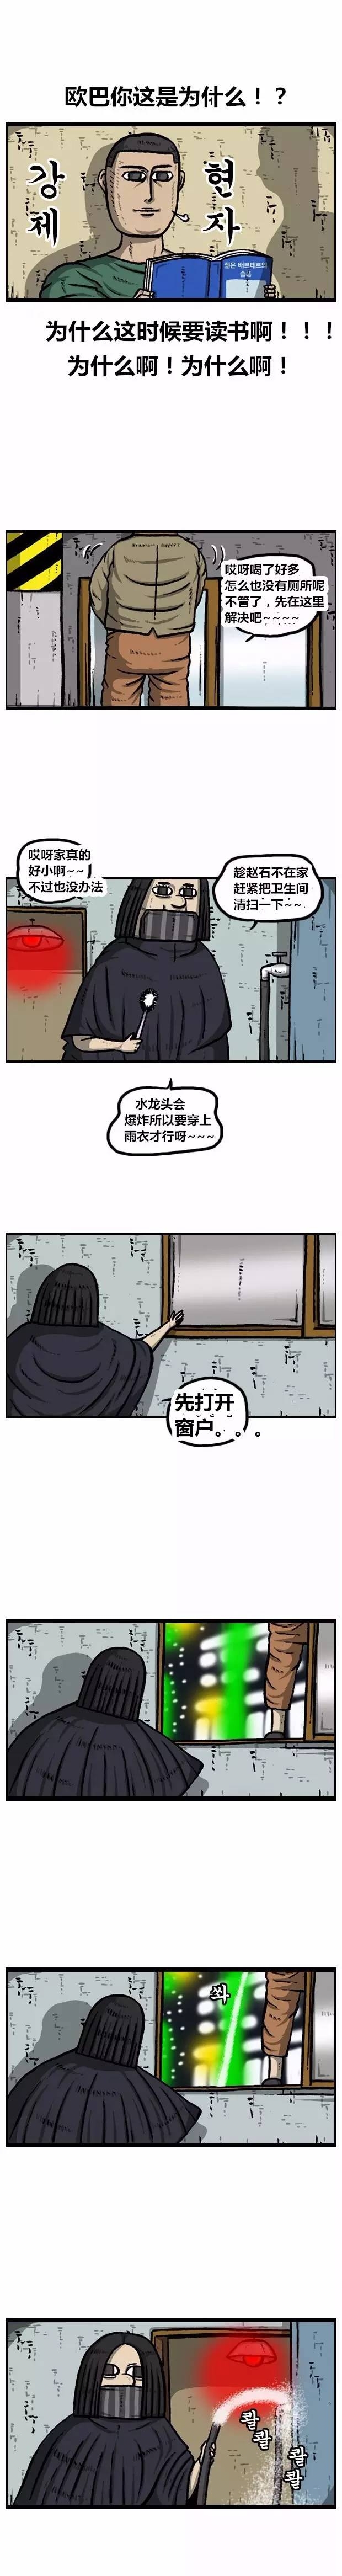 搞笑漫畫《趙俊給趙石介紹了個新住處》 汽車 第4張